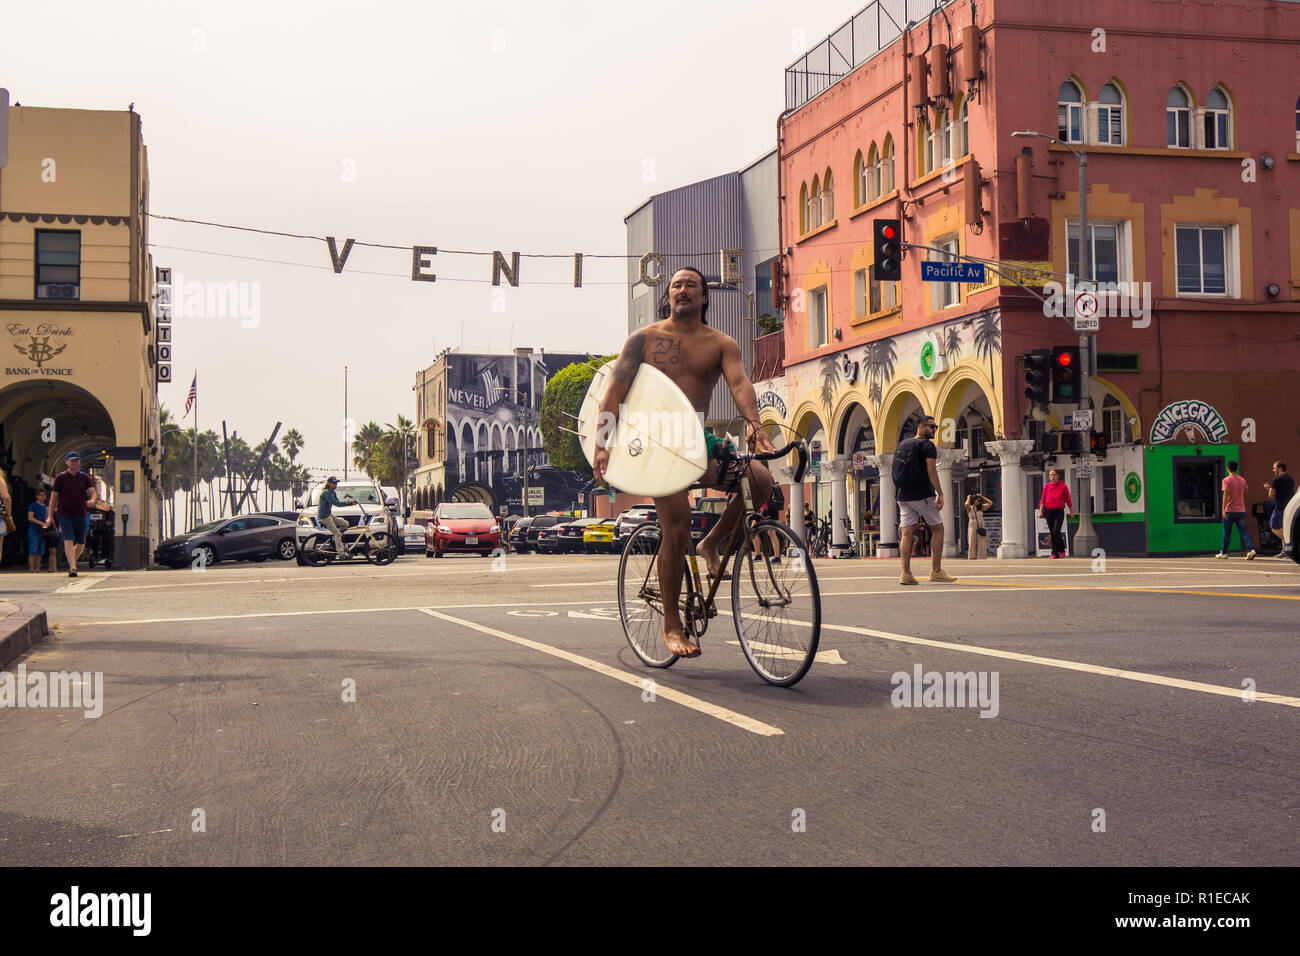 Un internaute de retour à la maison sur son vélo with surfboard at Venice Beach, Los Angeles, Californie Banque D'Images